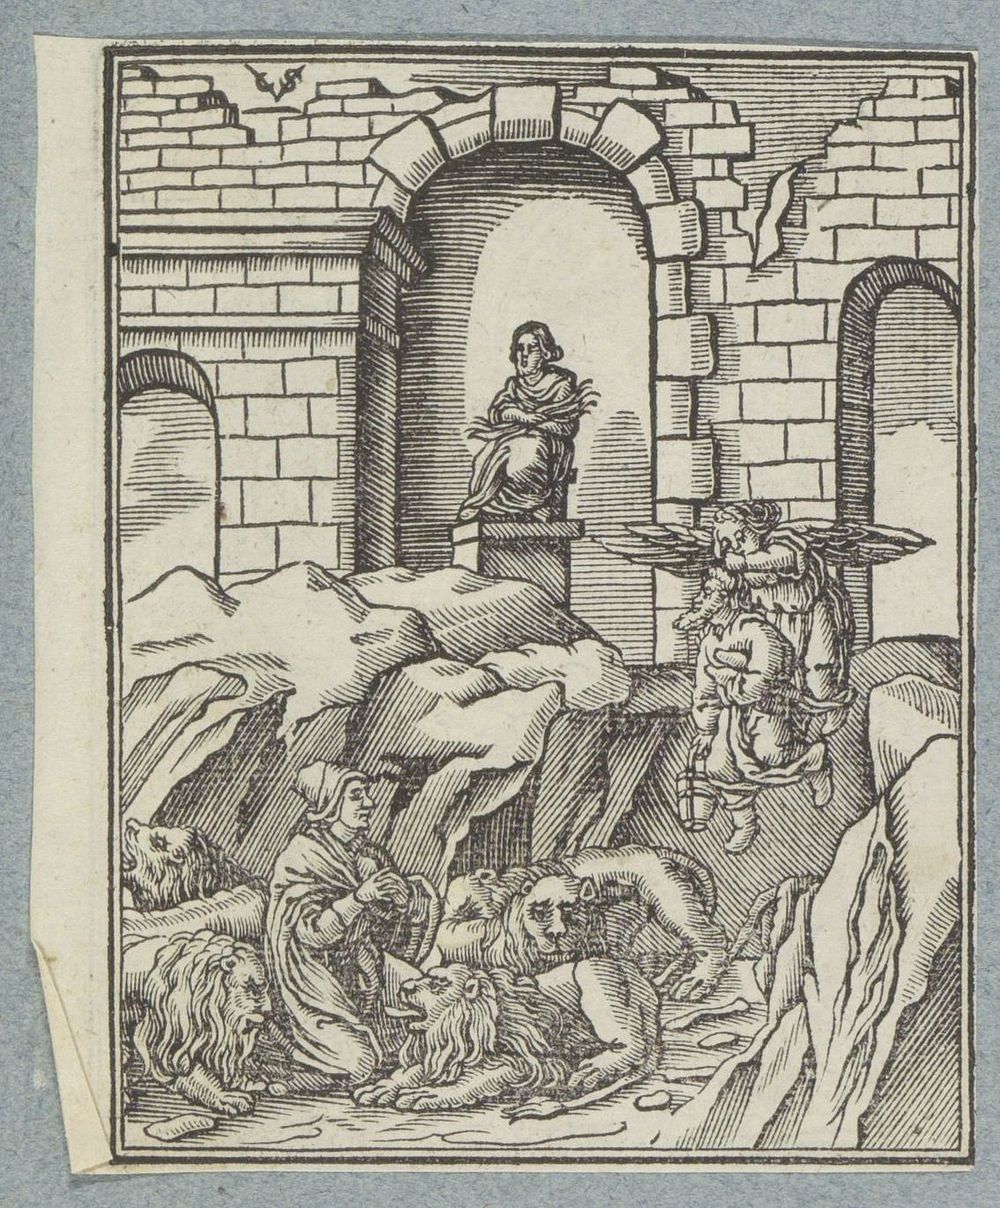 Daniël in de leeuwenkuil (1645 - 1646) by Christoffel van Sichem II, Christoffel van Sichem III and Pieter Jacobsz Paets